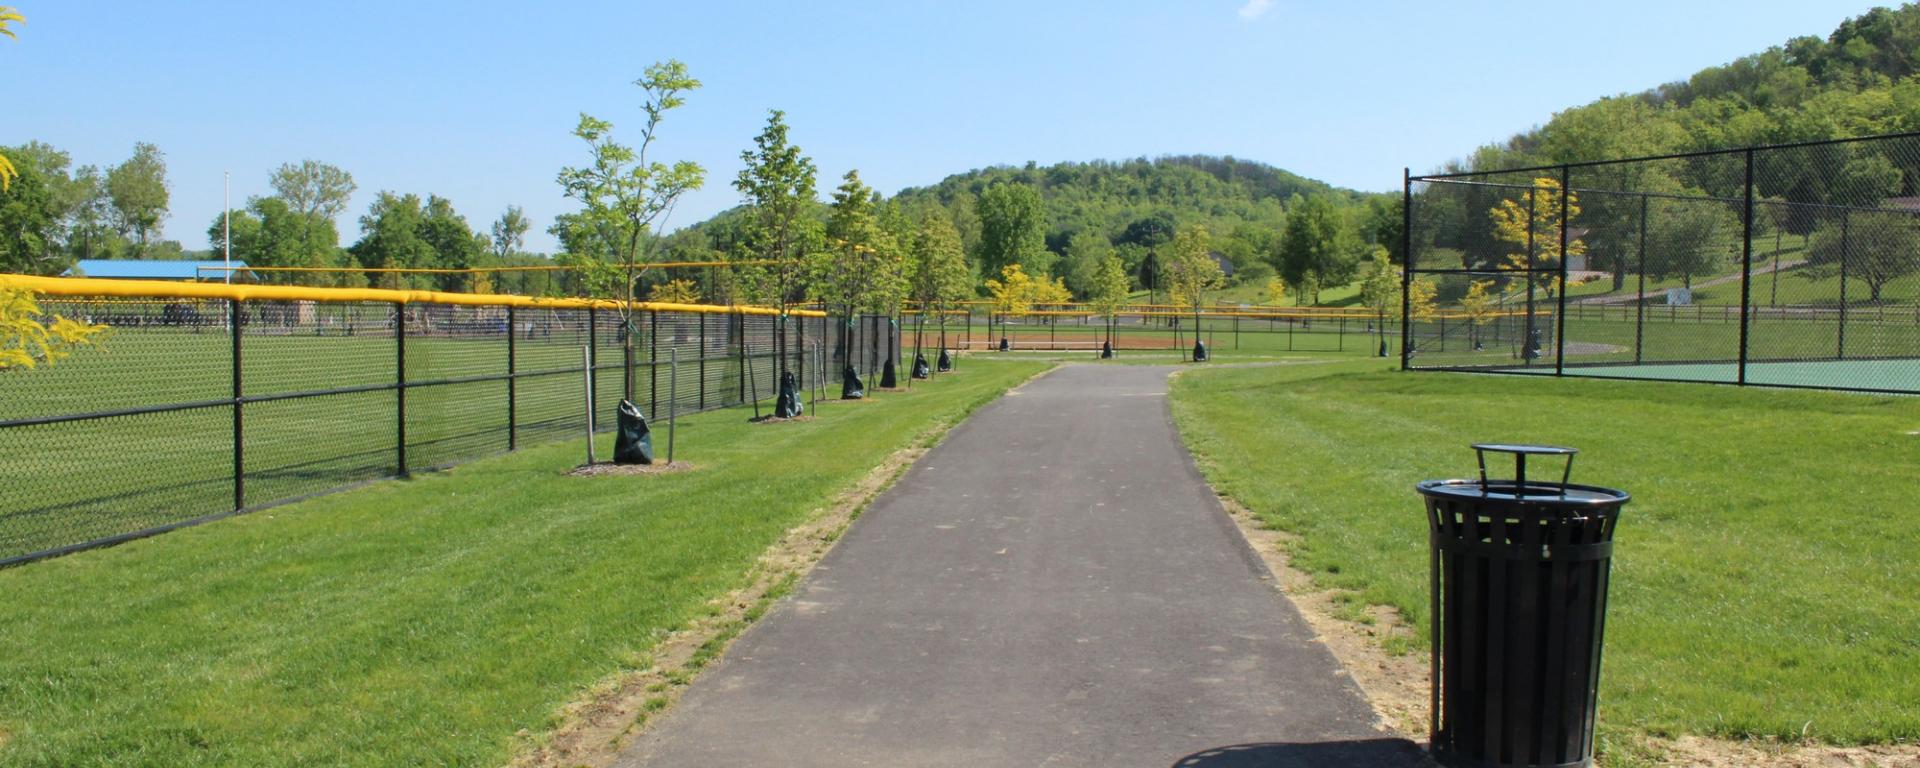 walkway alongside athletic fields